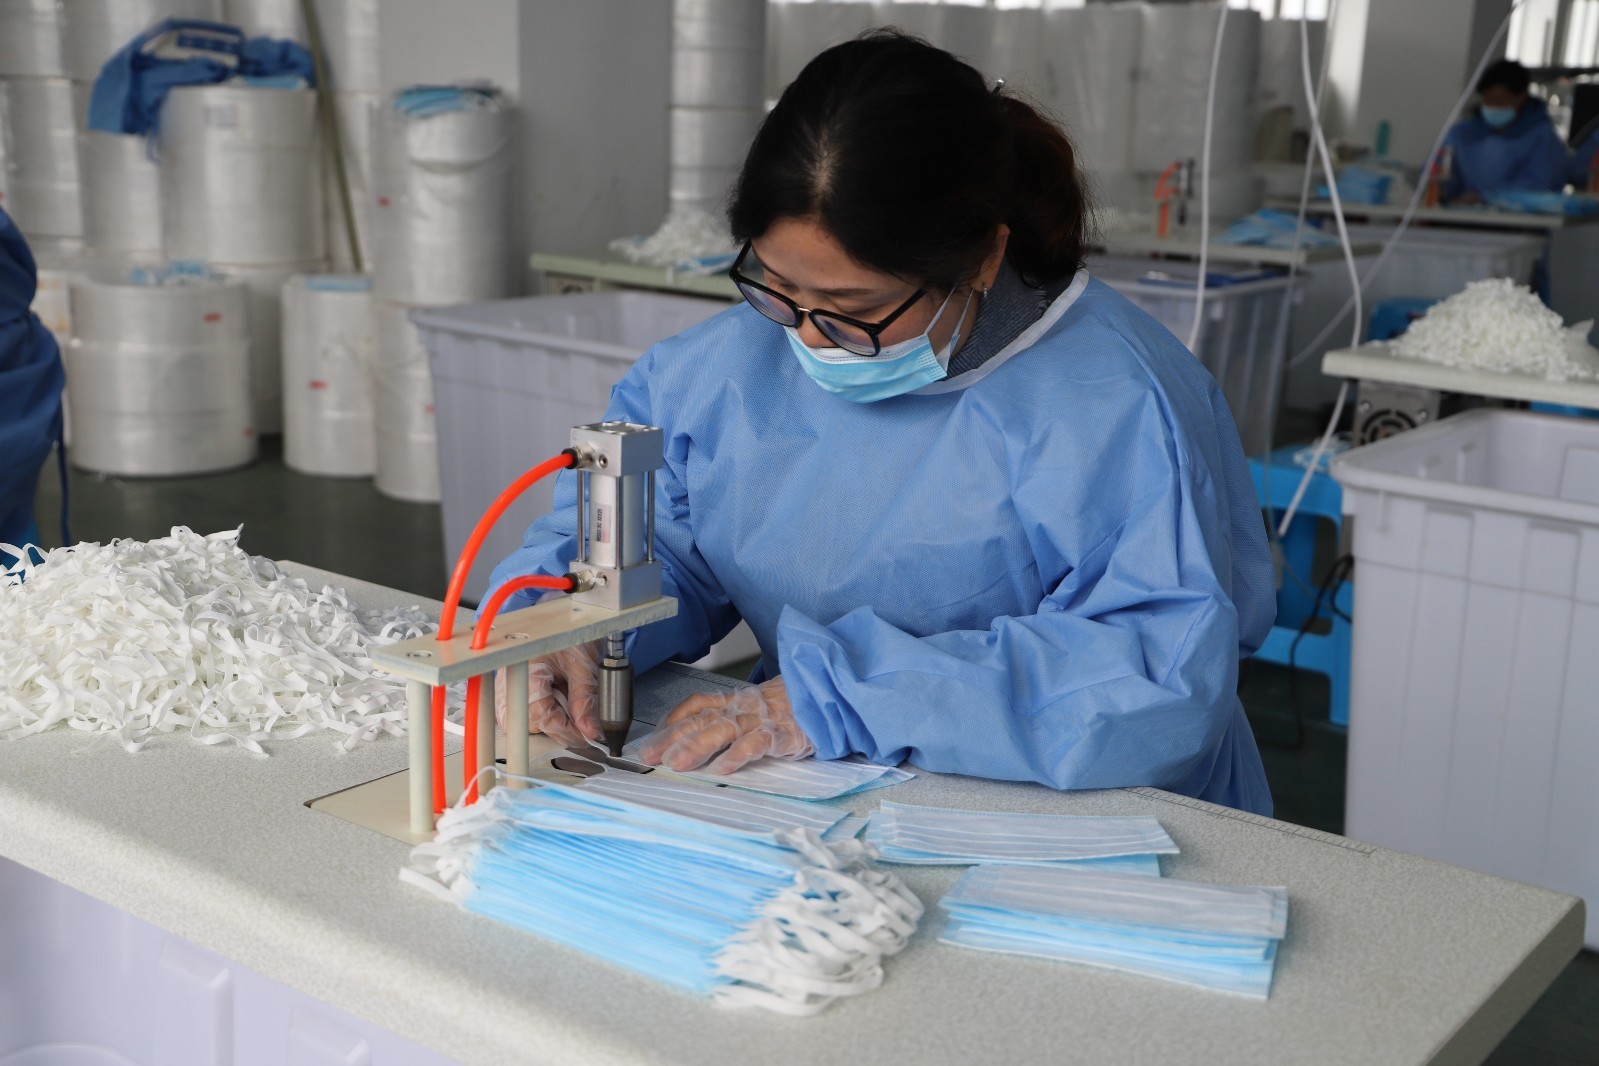 3月5日,邓州市产业孵化园河南省玖腾医疗器械有限公司车间内,工人在